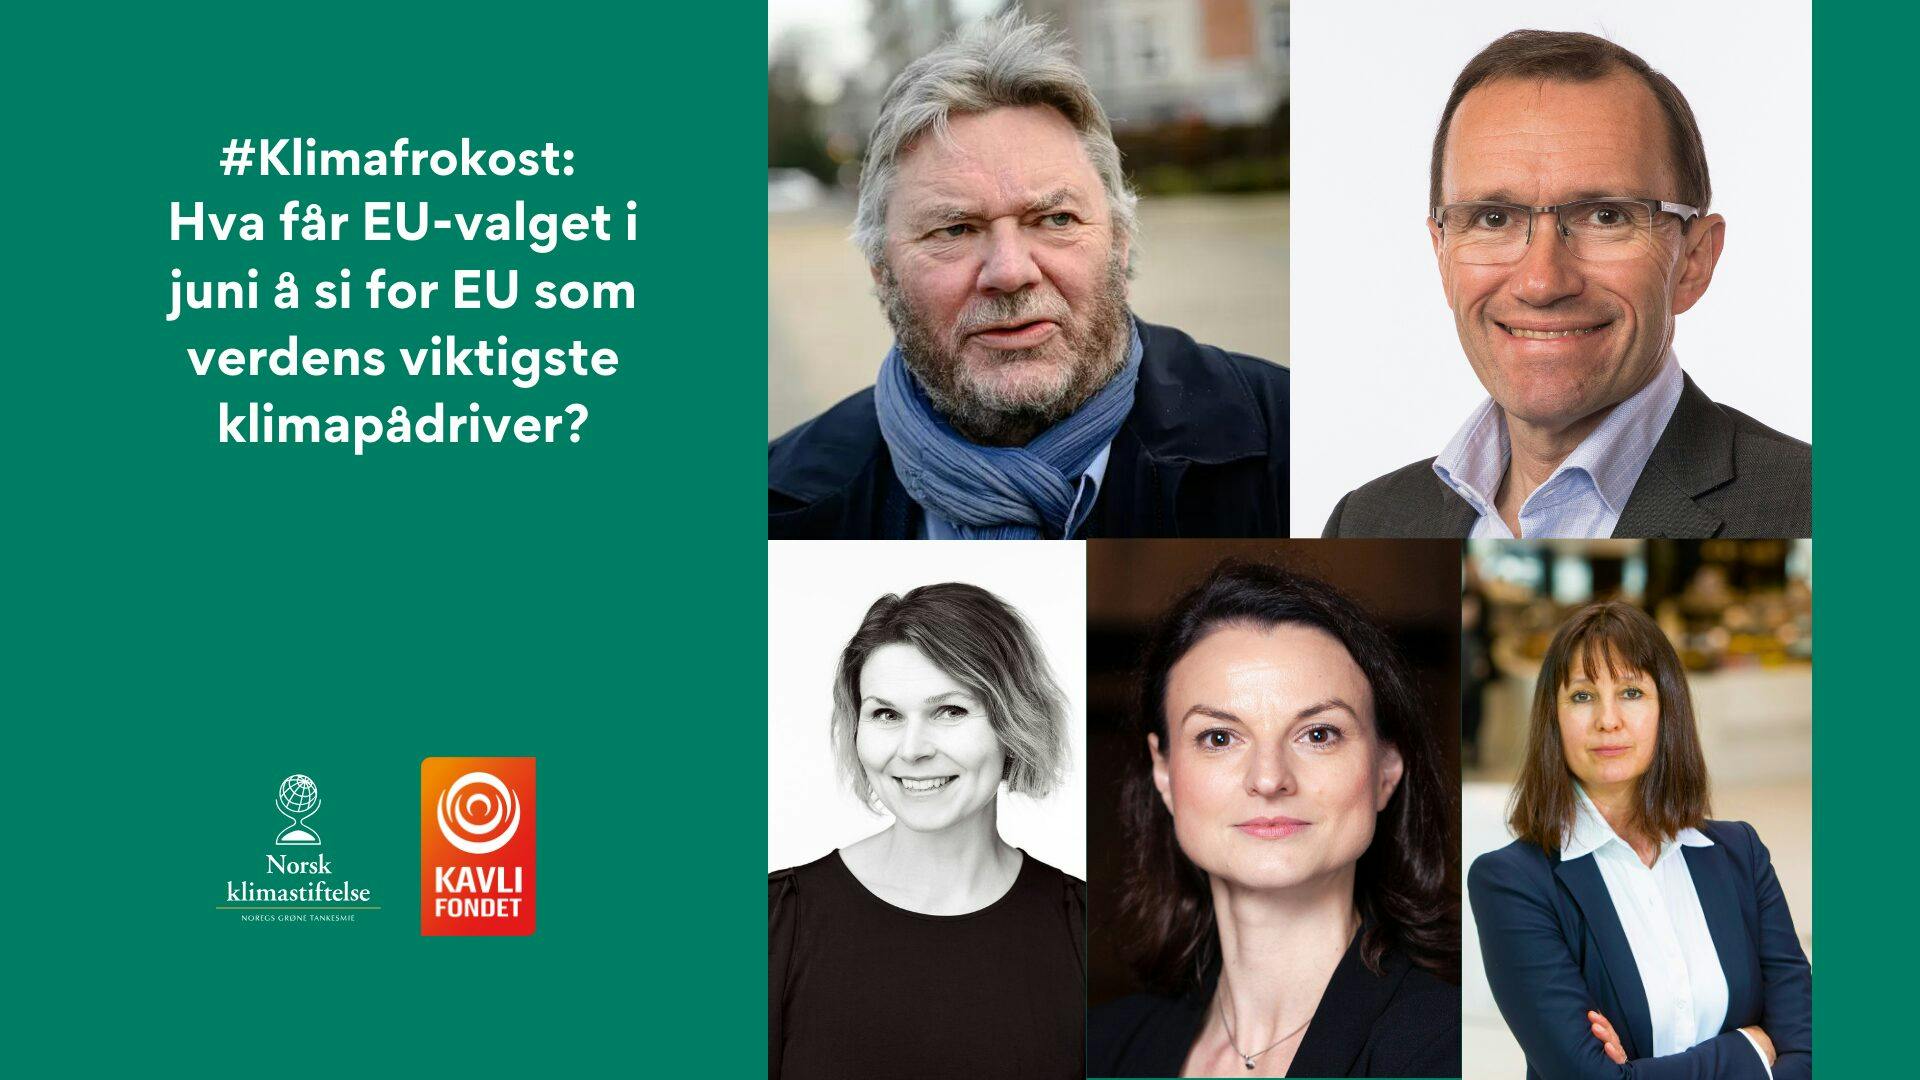 Reklamegrafikk for et klimarelatert arrangement, med bilder av seks personer og tekst på norsk. Logoer til Norsk klimastiftelse og Kavlifondet vises.